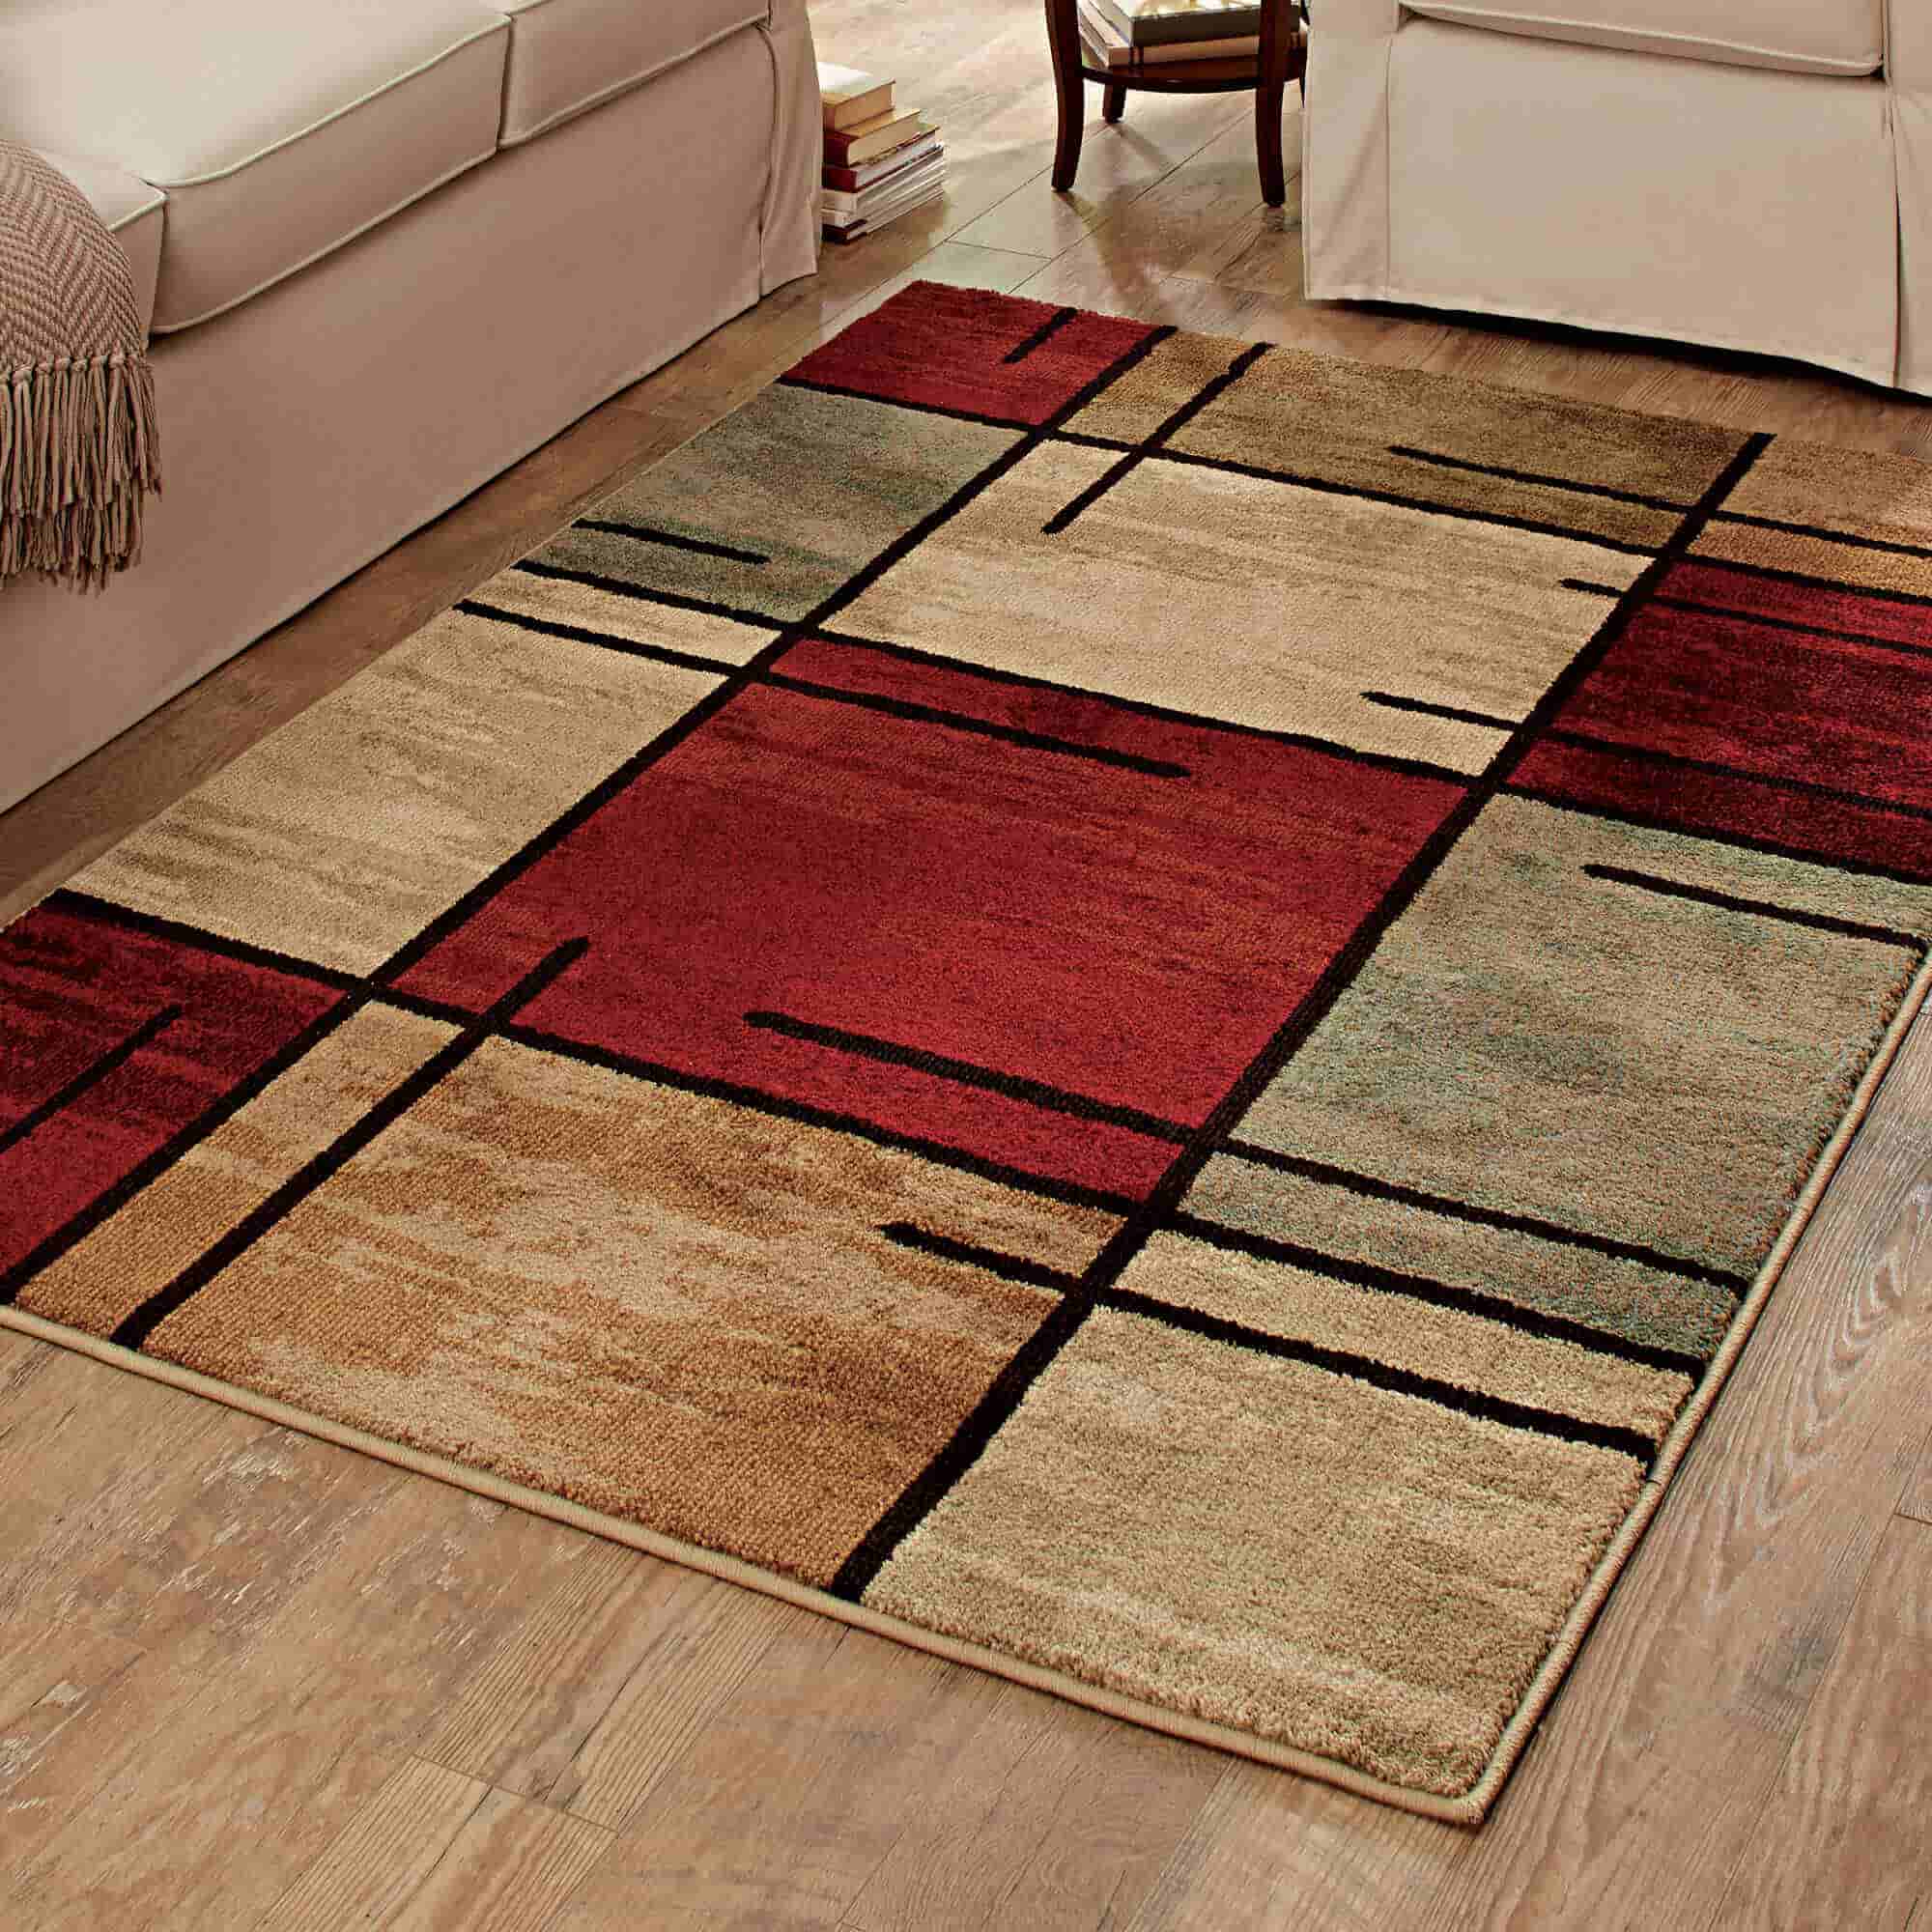 rug carpet design